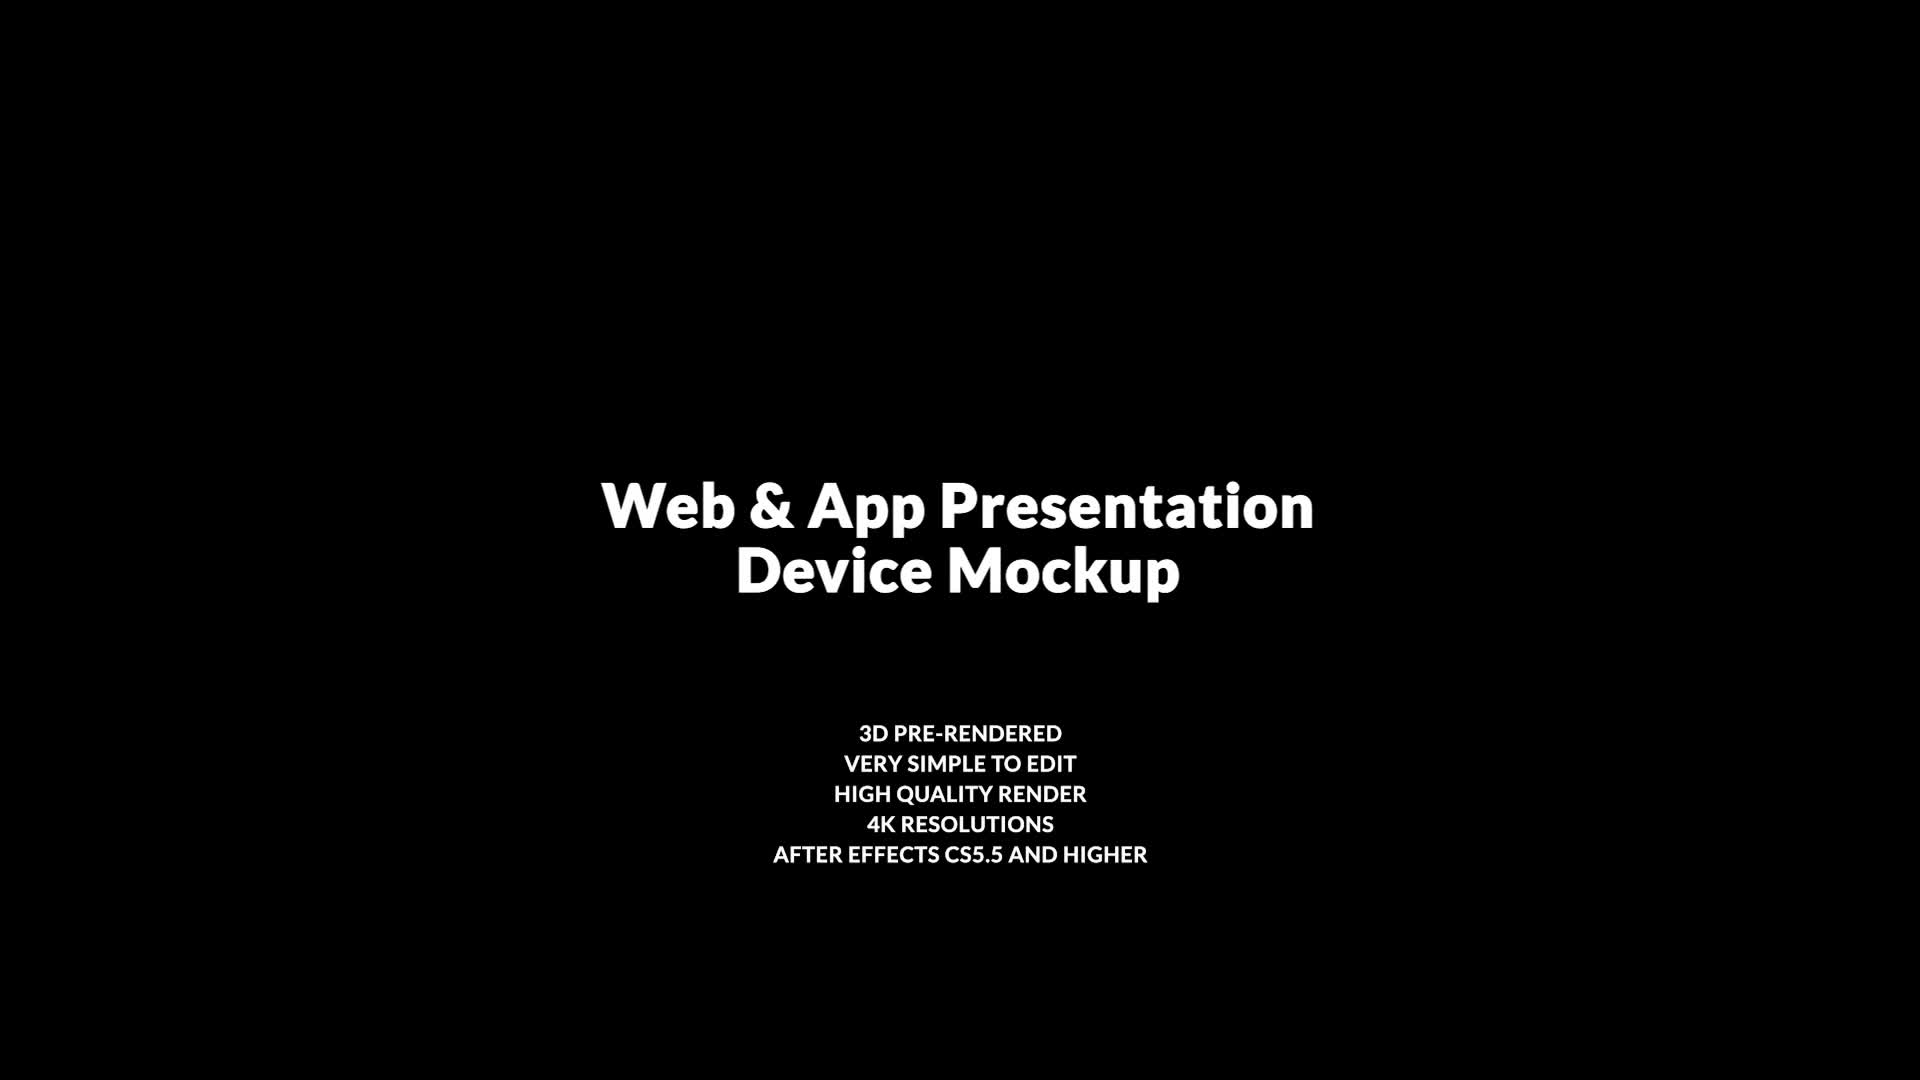 App and Web Promo | Device Mockup | Premiere Pro Videohive 39703893 Premiere Pro Image 1